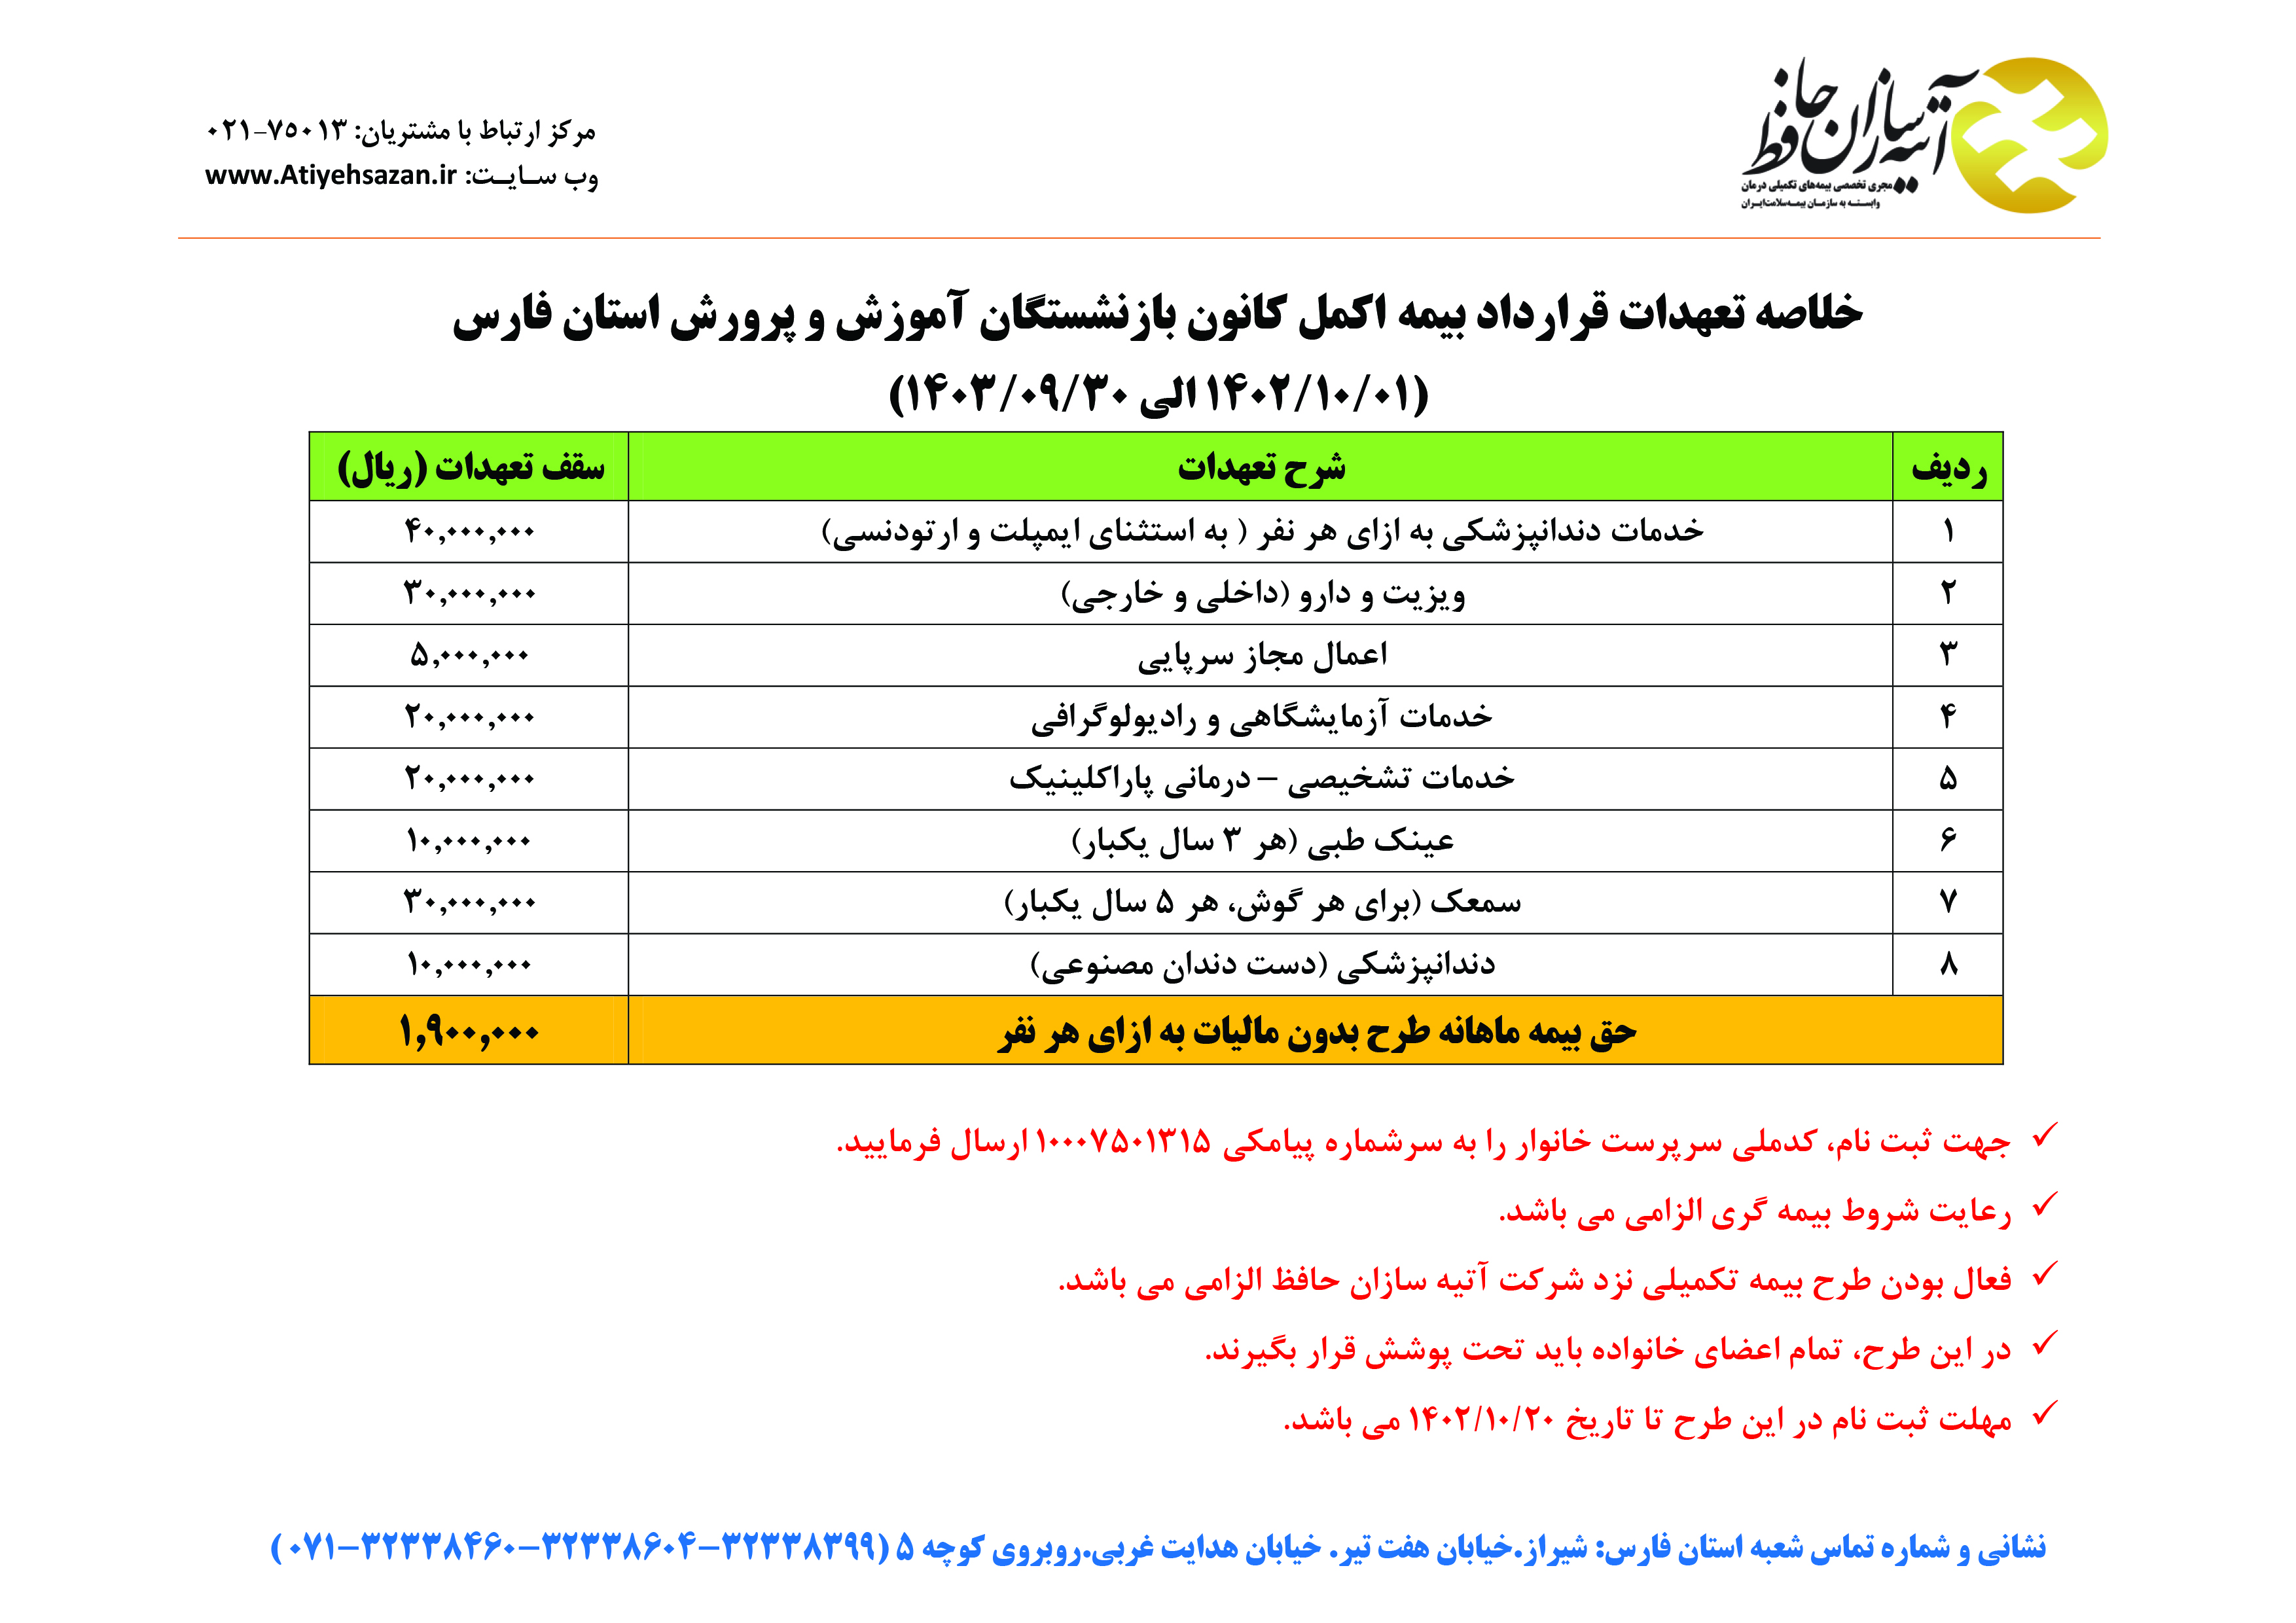 ثبت نام بیمه اکمل بازنشستگان آموزش و پرورش استان فارس آغاز شد/ همراه با جزئیات